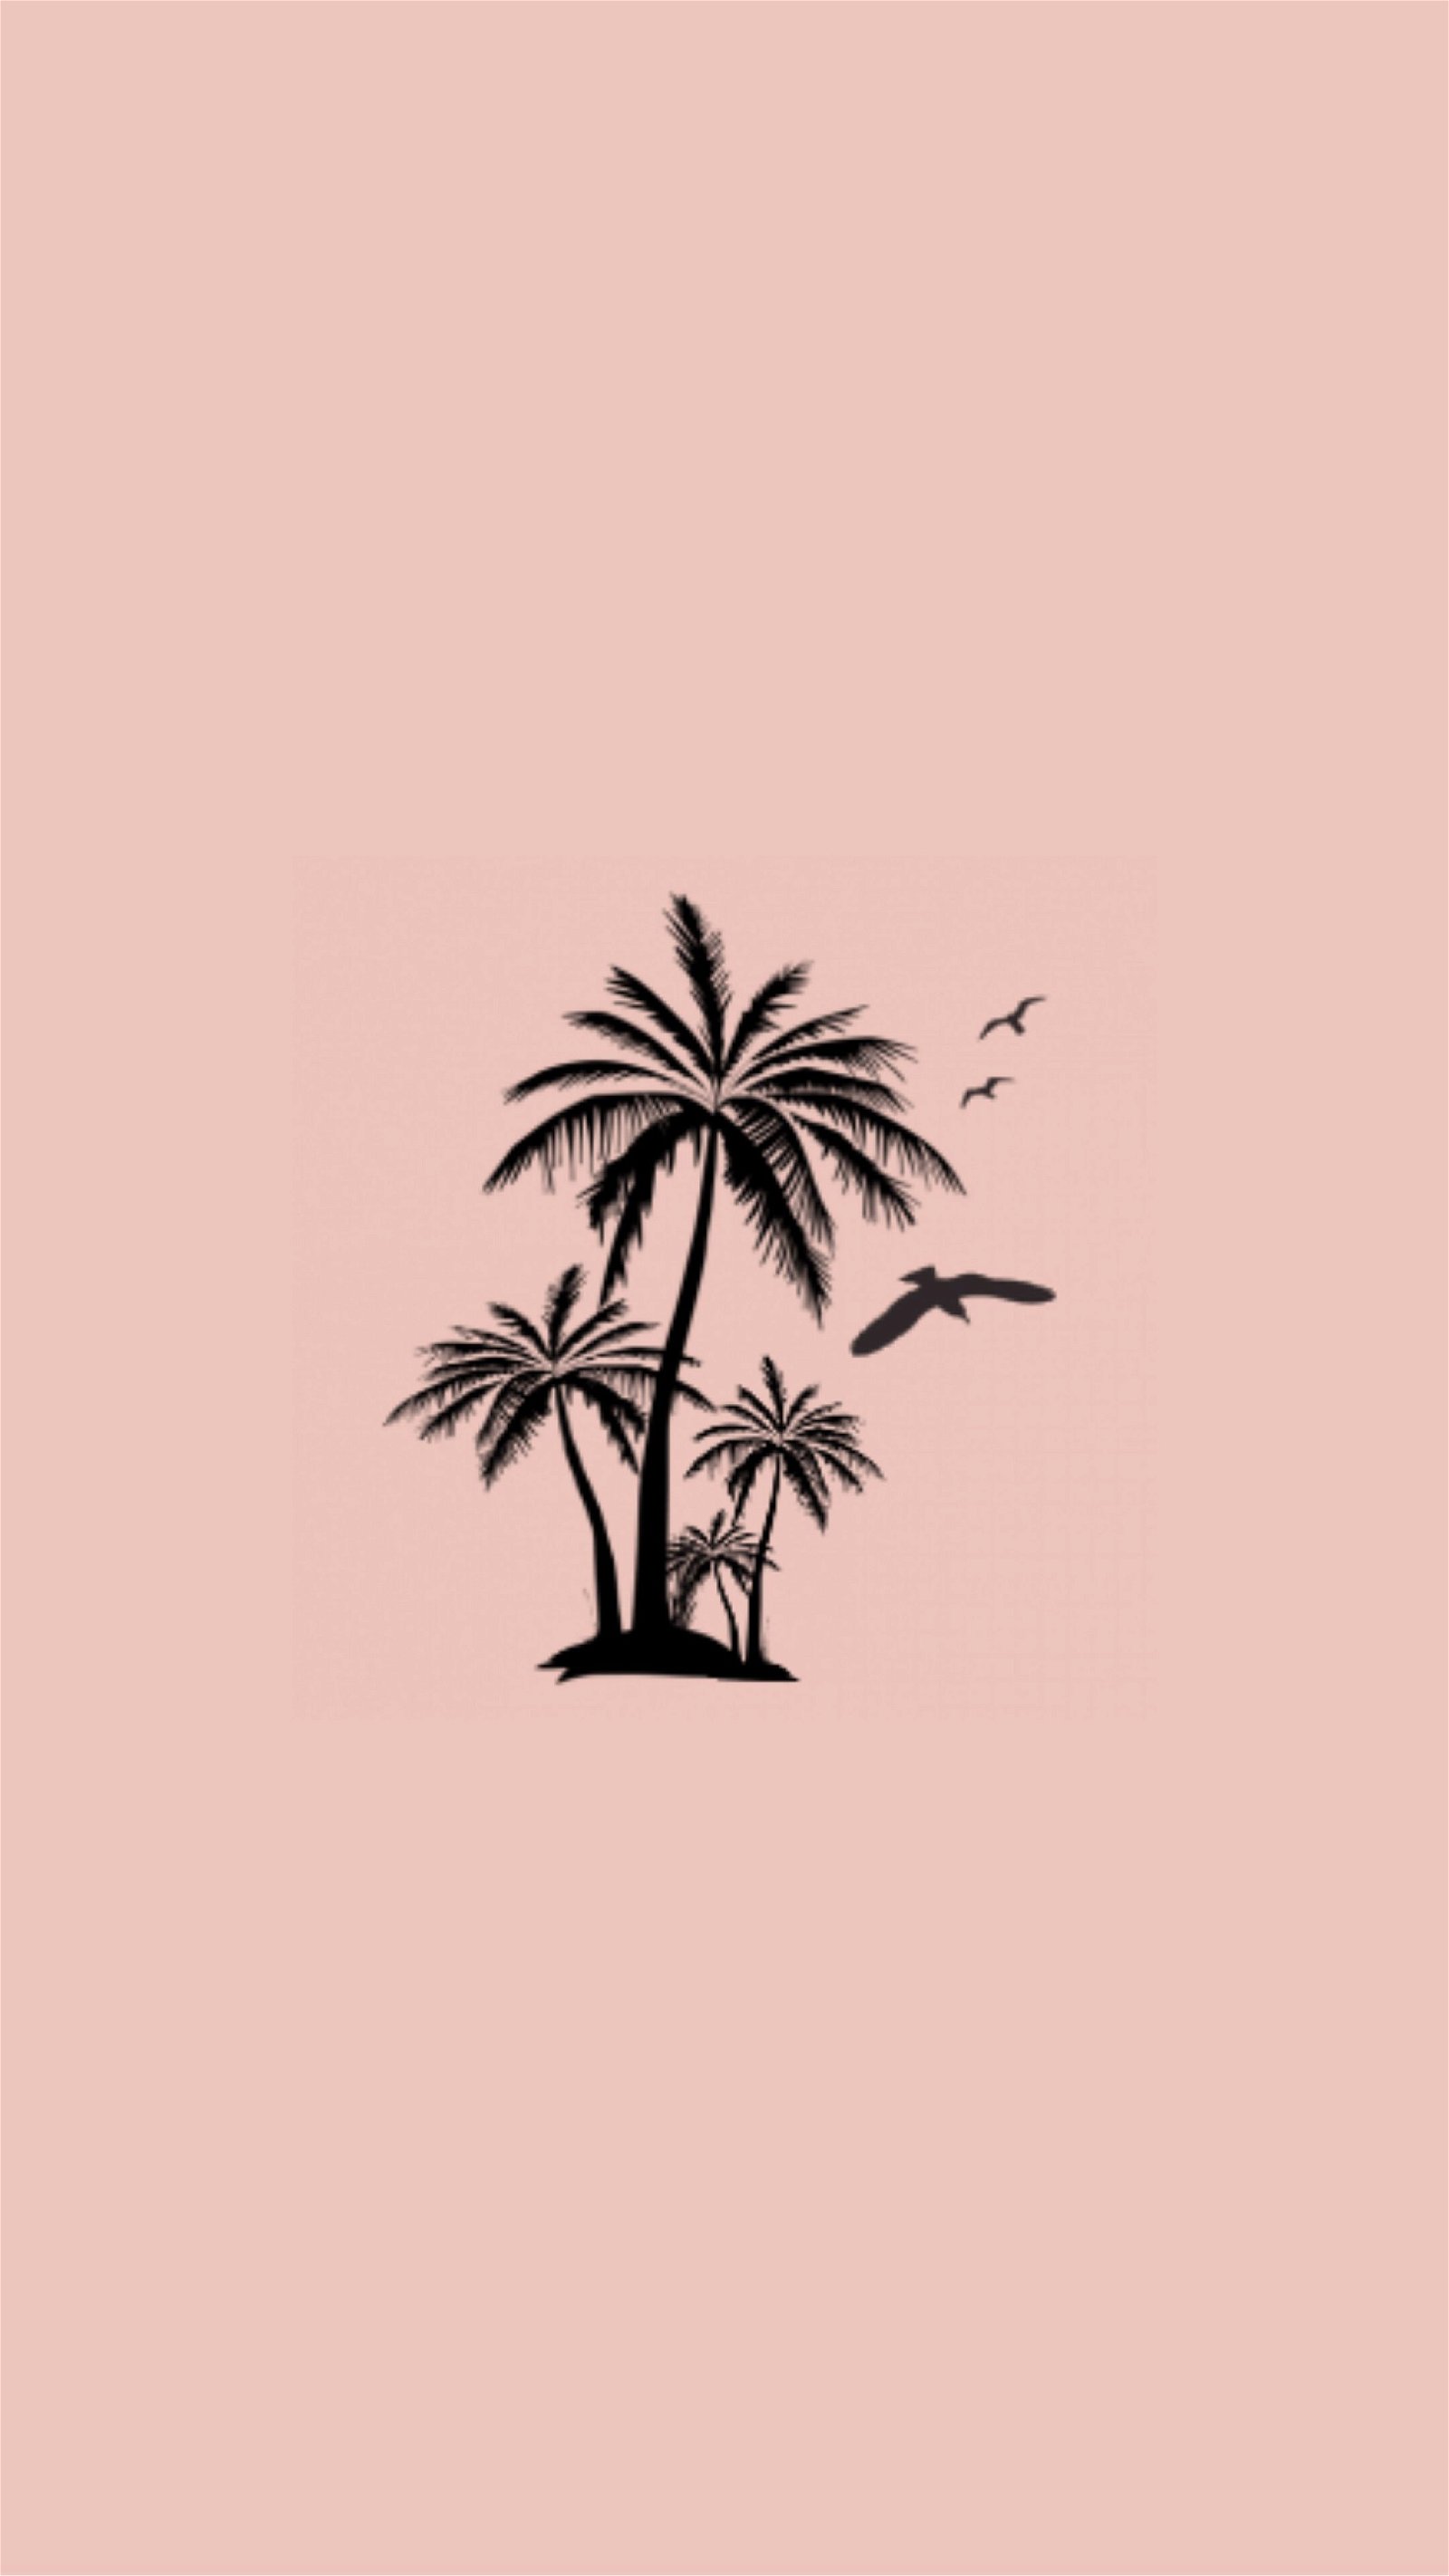 Pink Palm Tree Images  Free Download on Freepik